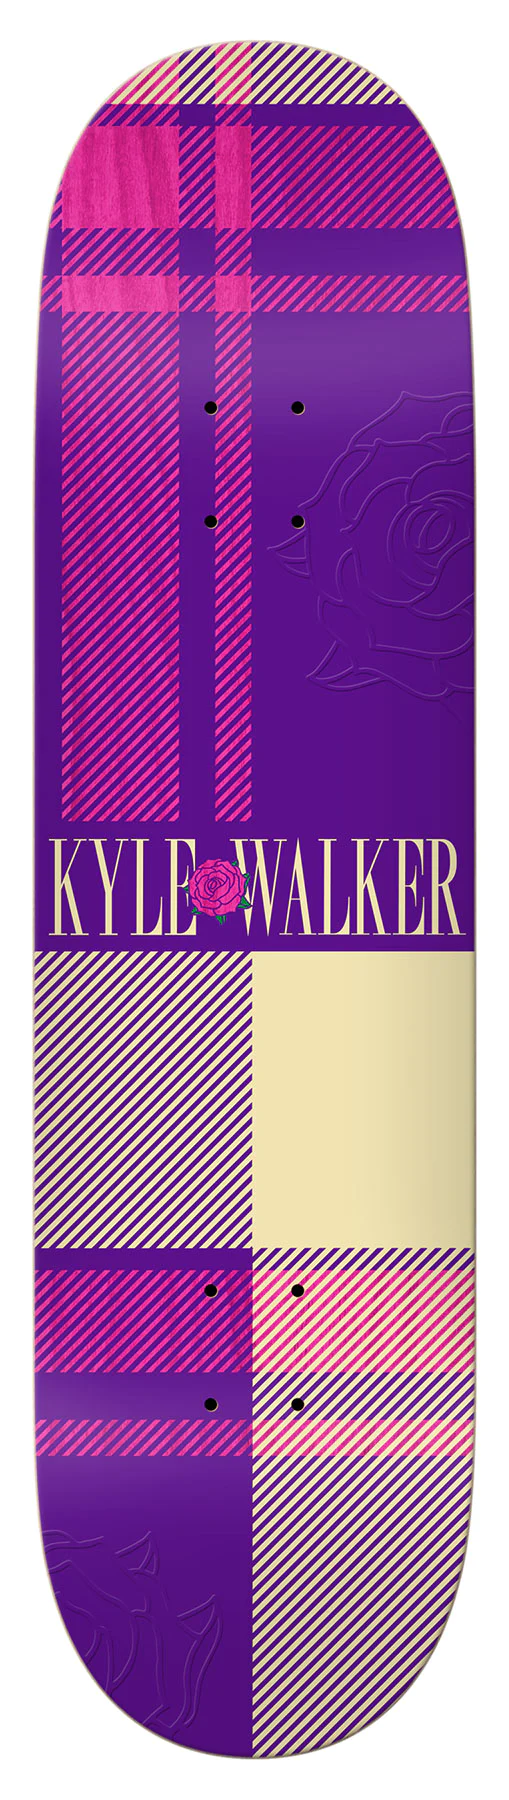 Real - Kyle Walker Highland